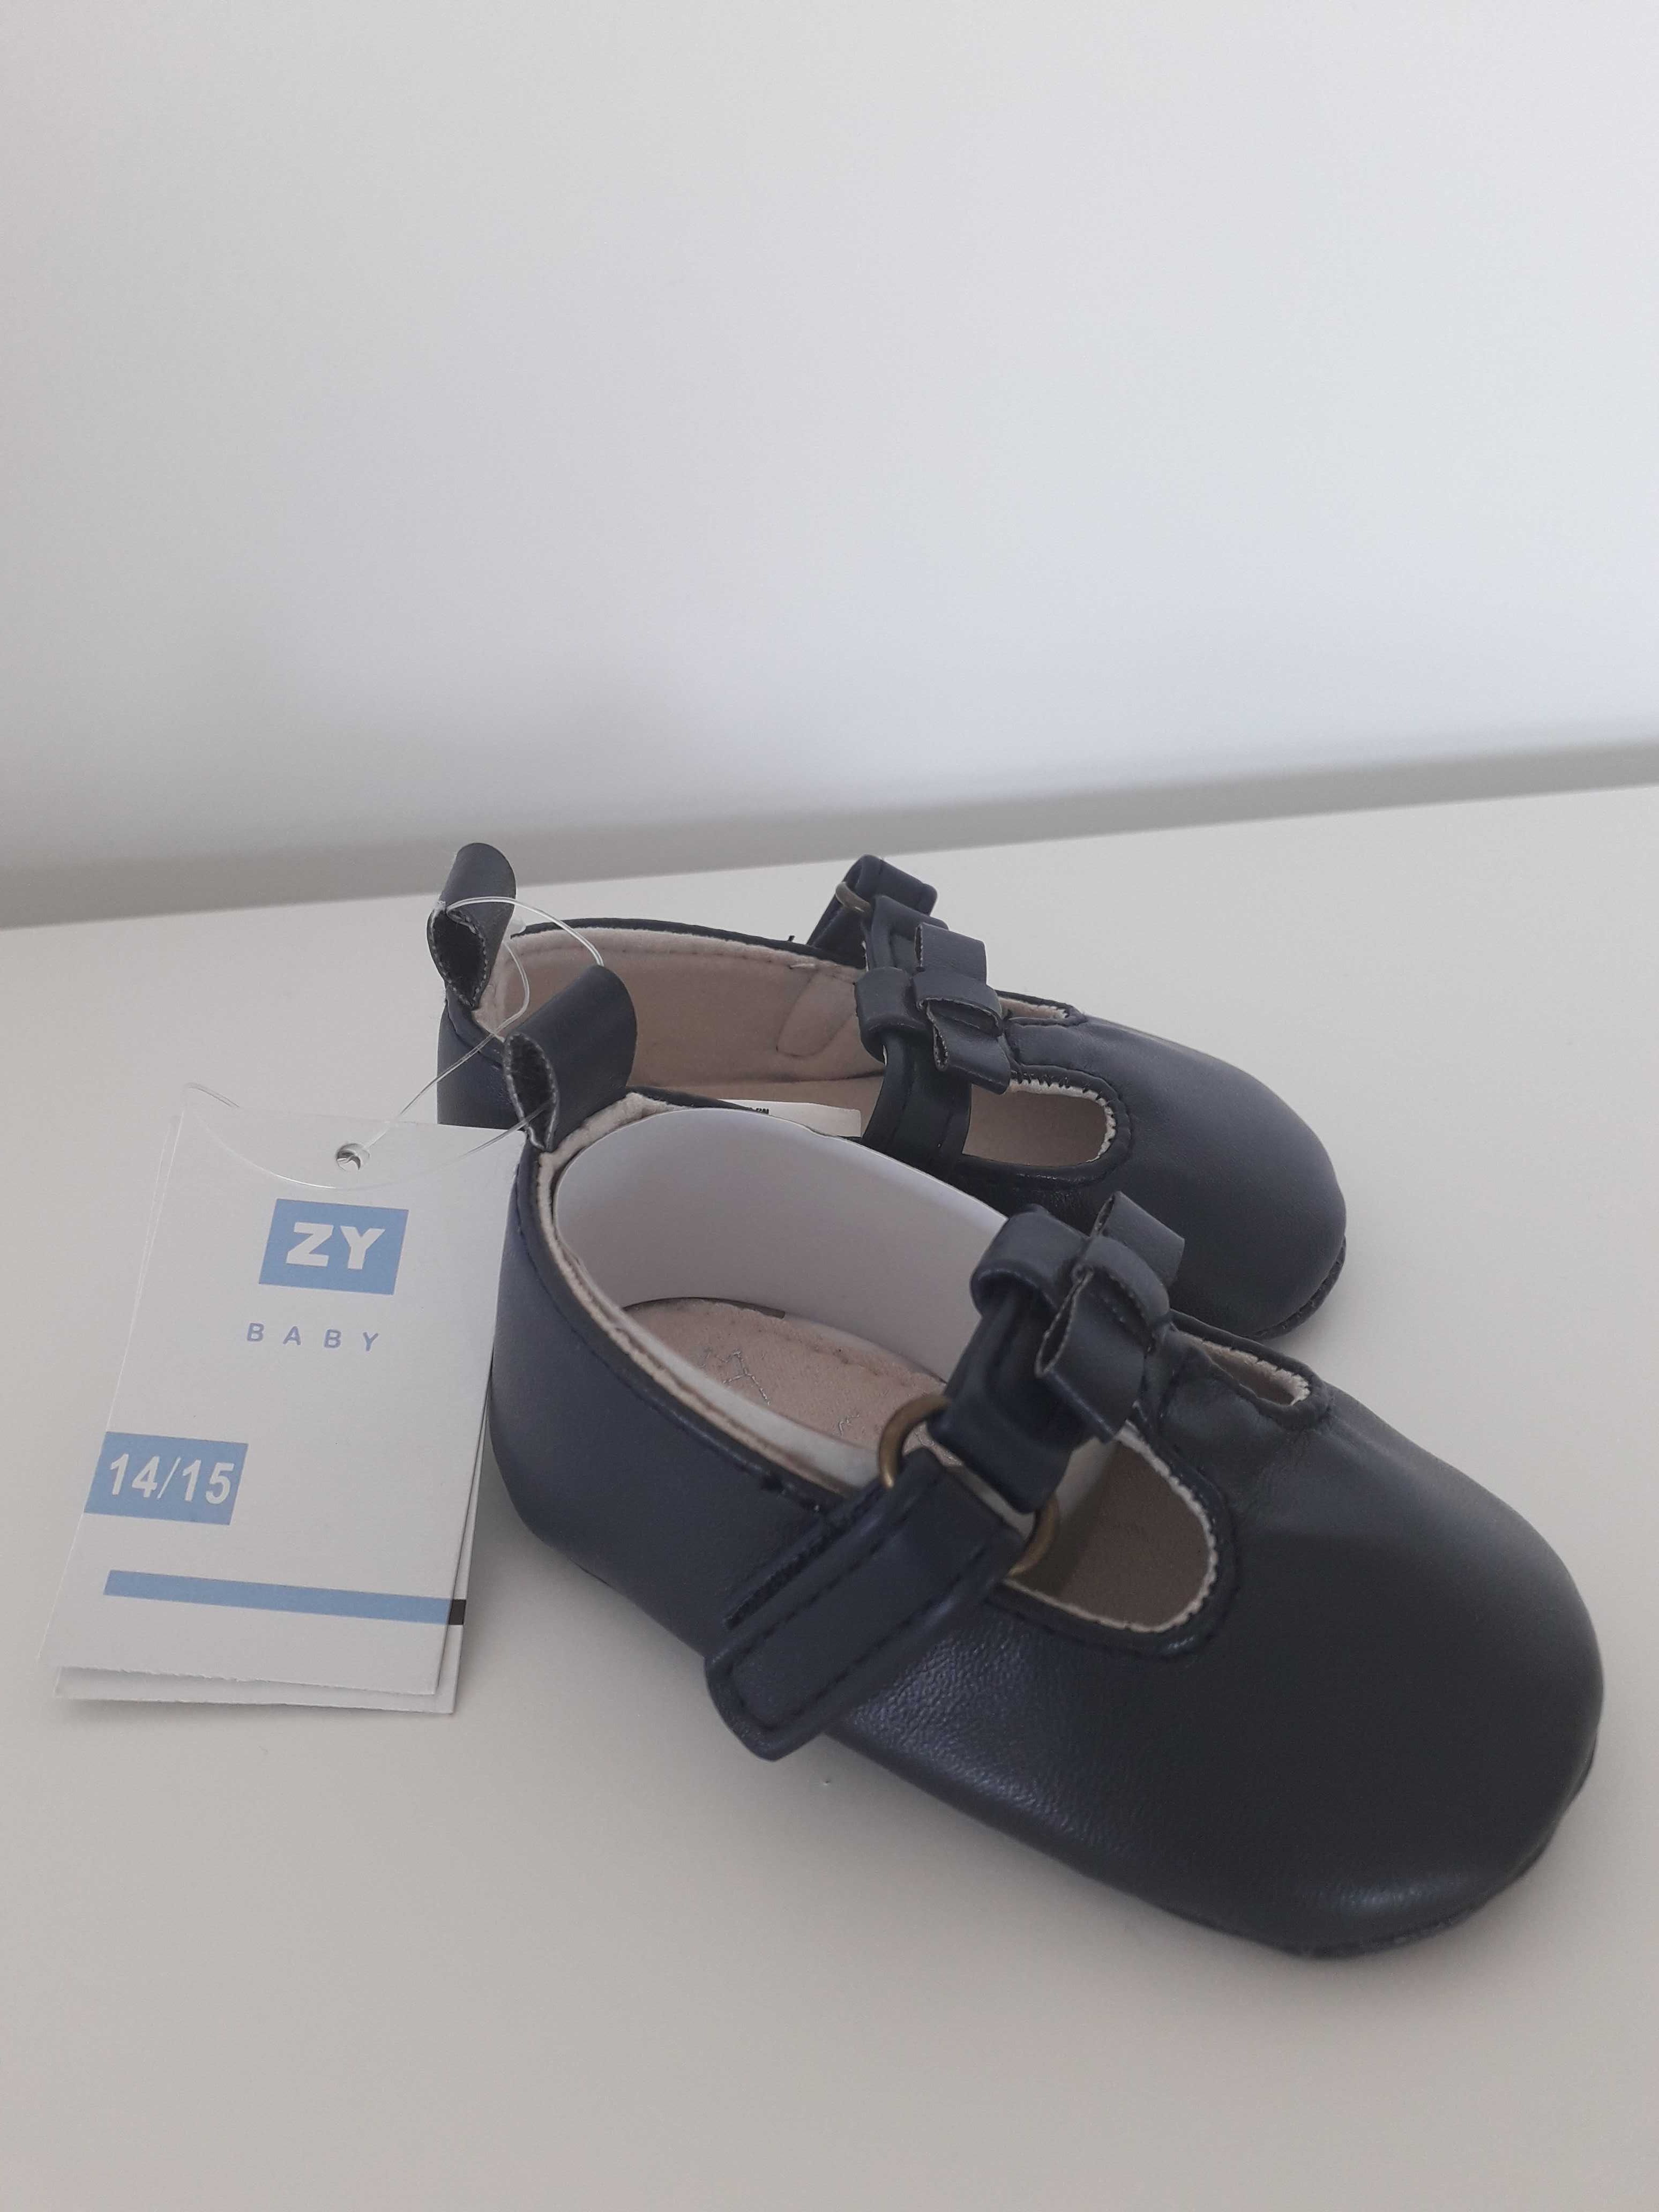 Sapatos novos ZIPPY menina,  tamanho 14-15